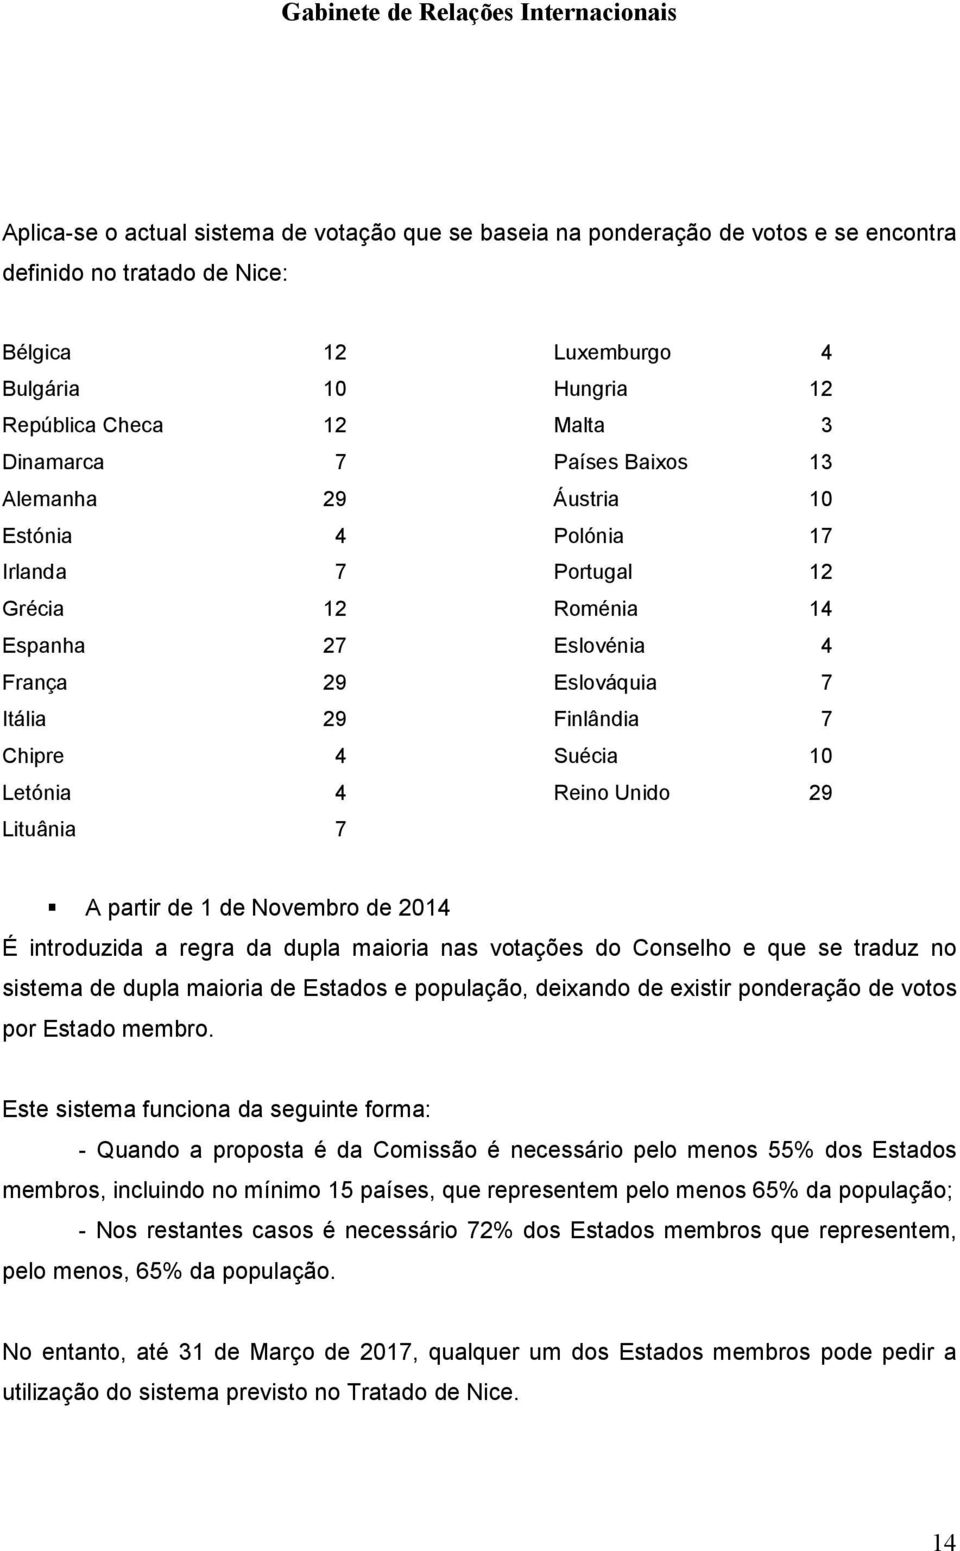 10 Letónia 4 Reino Unido 29 Lituânia 7 A partir de 1 de Novembro de 2014 É introduzida a regra da dupla maioria nas votações do Conselho e que se traduz no sistema de dupla maioria de Estados e